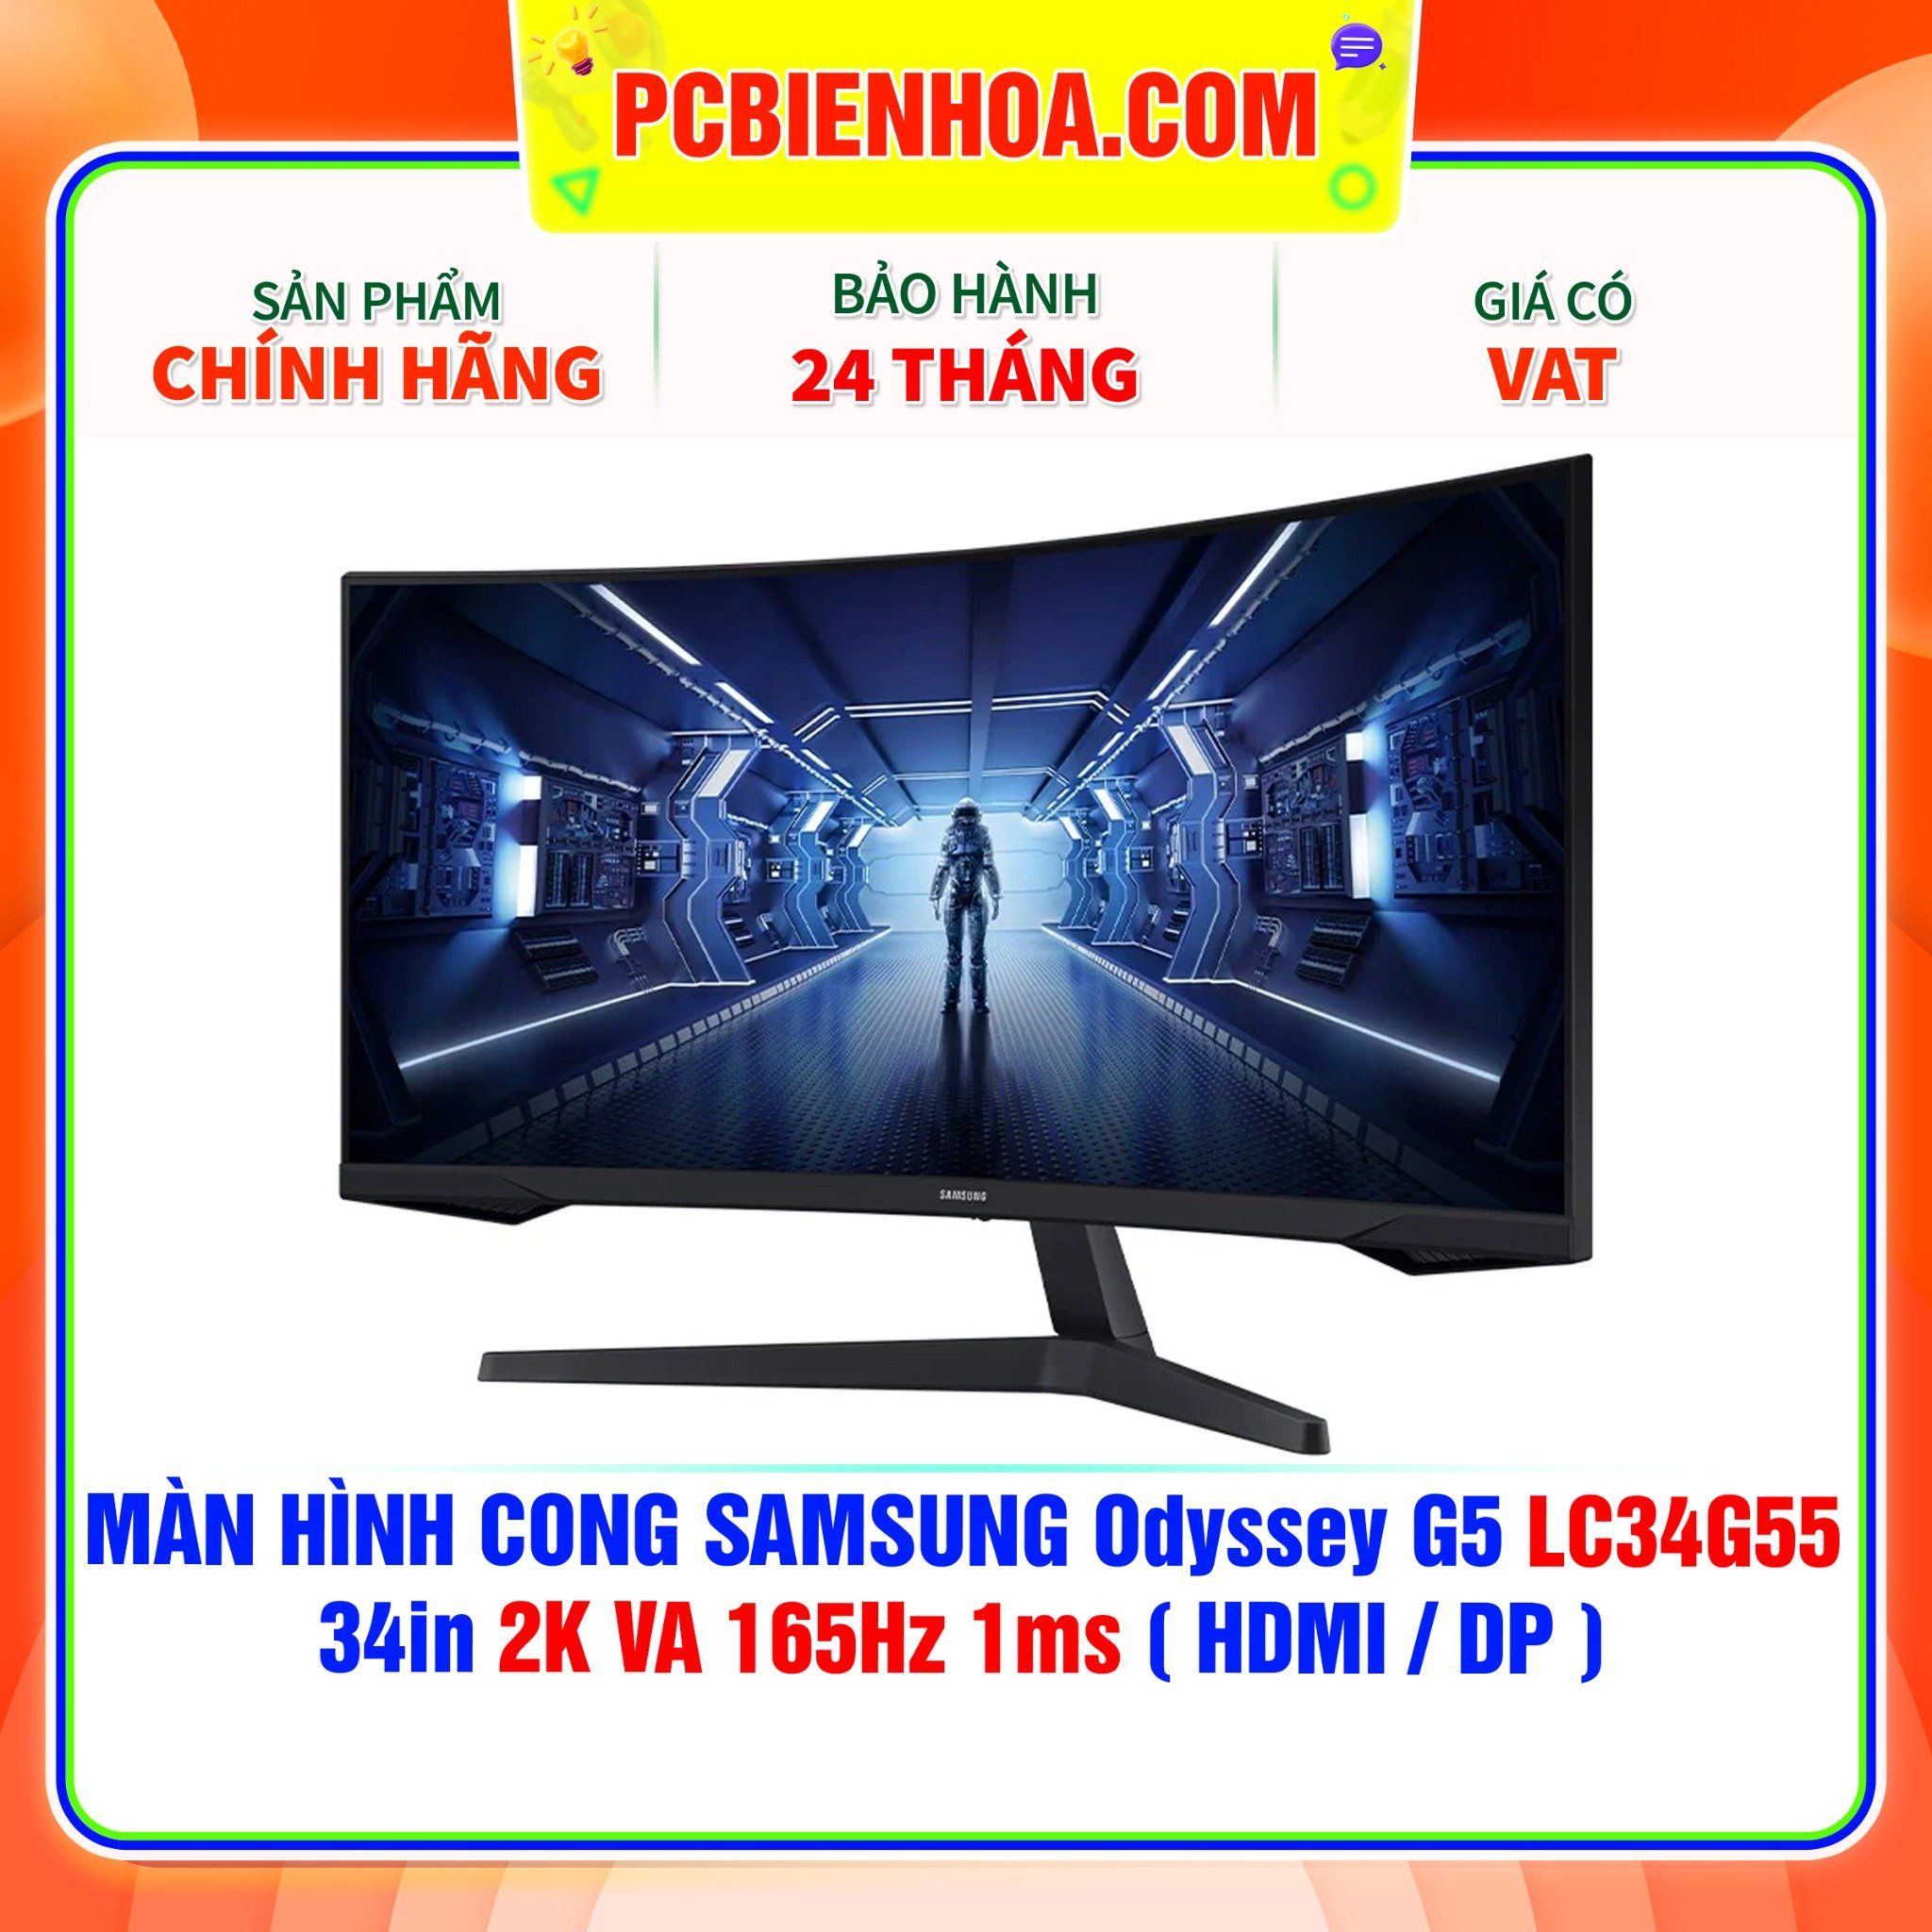  MÀN HÌNH CONG SAMSUNG Odyssey G5 LC34G55 34in 2K VA 165Hz 1ms ( HDMI / DP ) - LC34G55TWWEXXV 